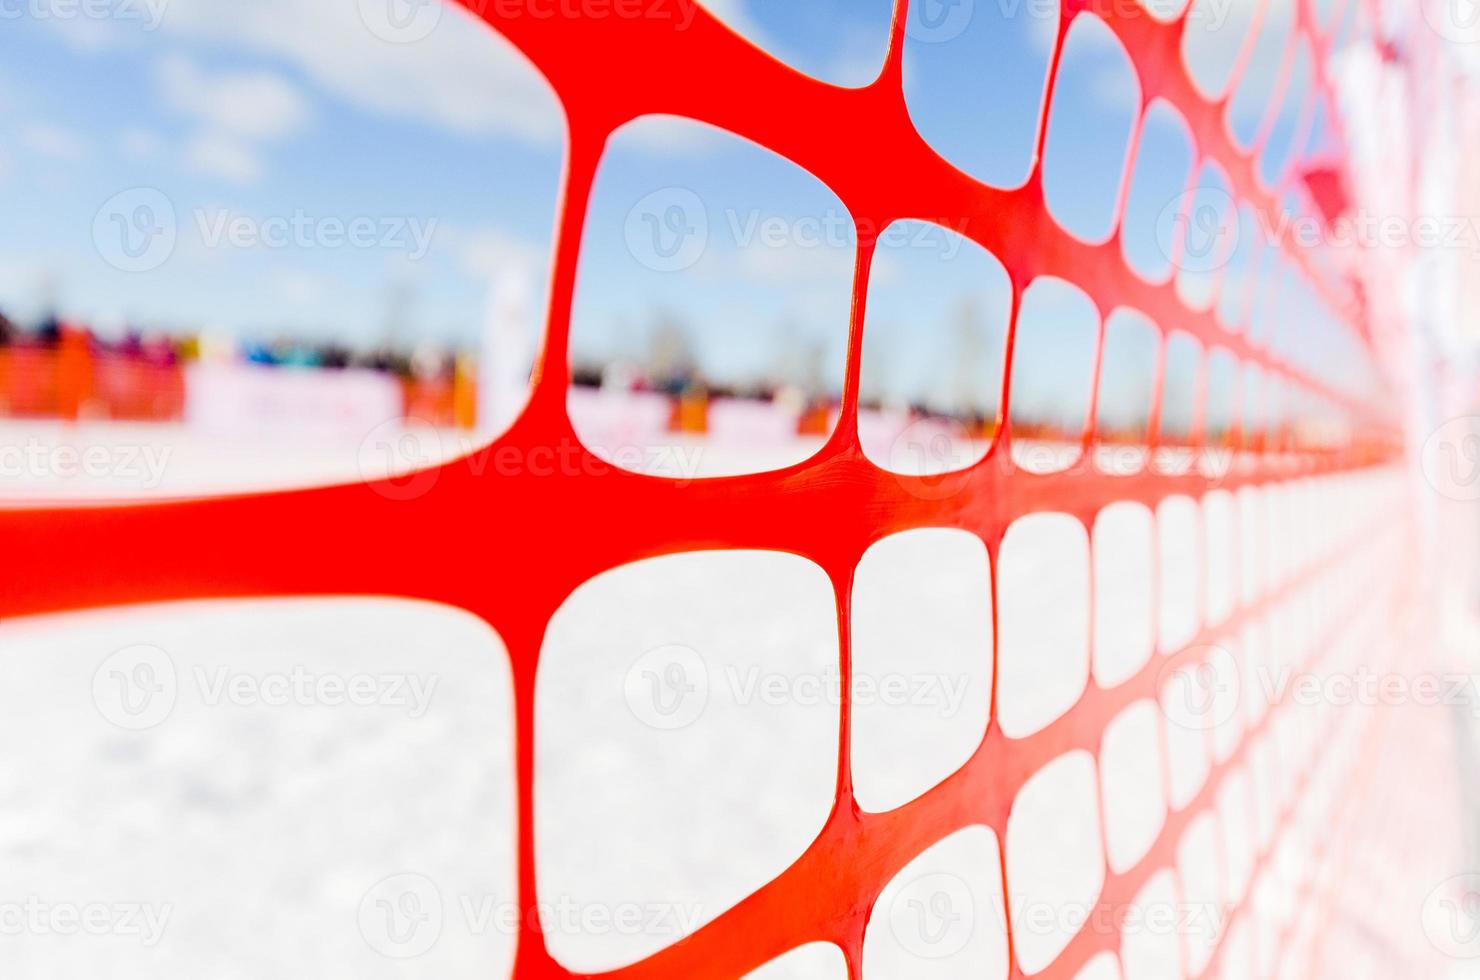 säkerhet utomhus lutning spår staket, vinter bakgrund. staket för att skydda åskådare vid sportevenemang, eller för att ange kurs vid extrema sporter - hundspann, snowboard eller skidåkning foto